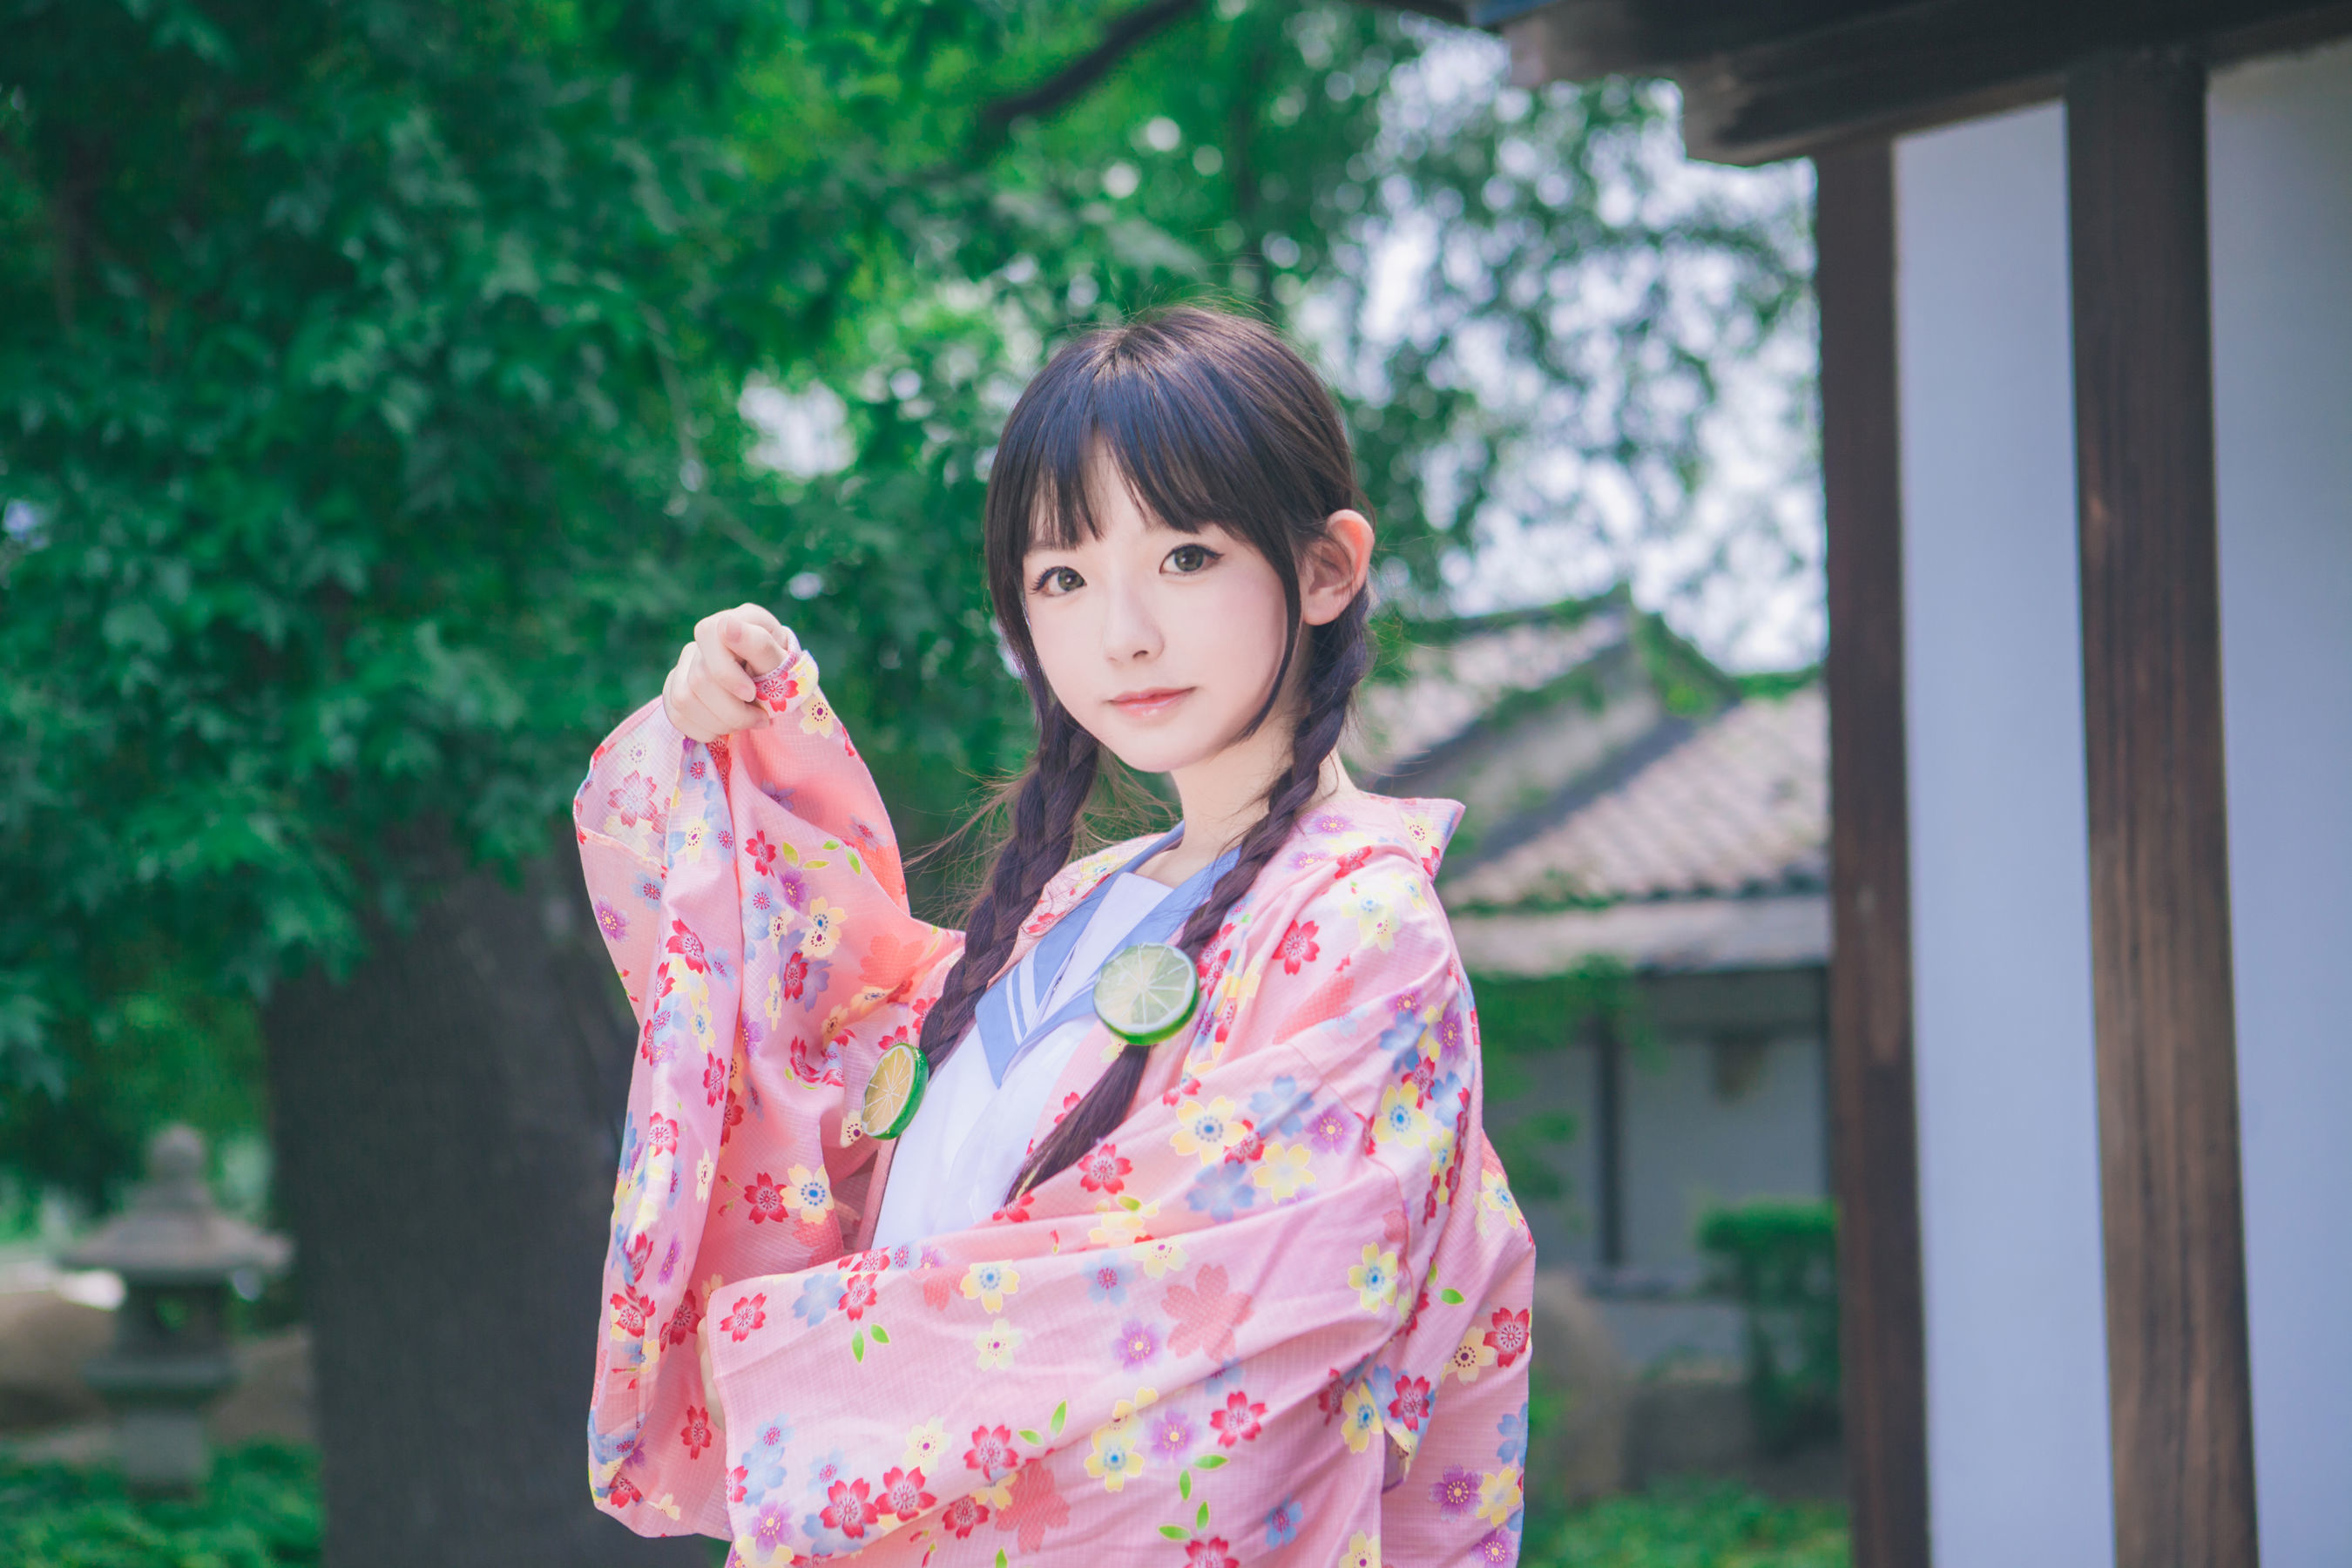 Видео красивых японских девушек